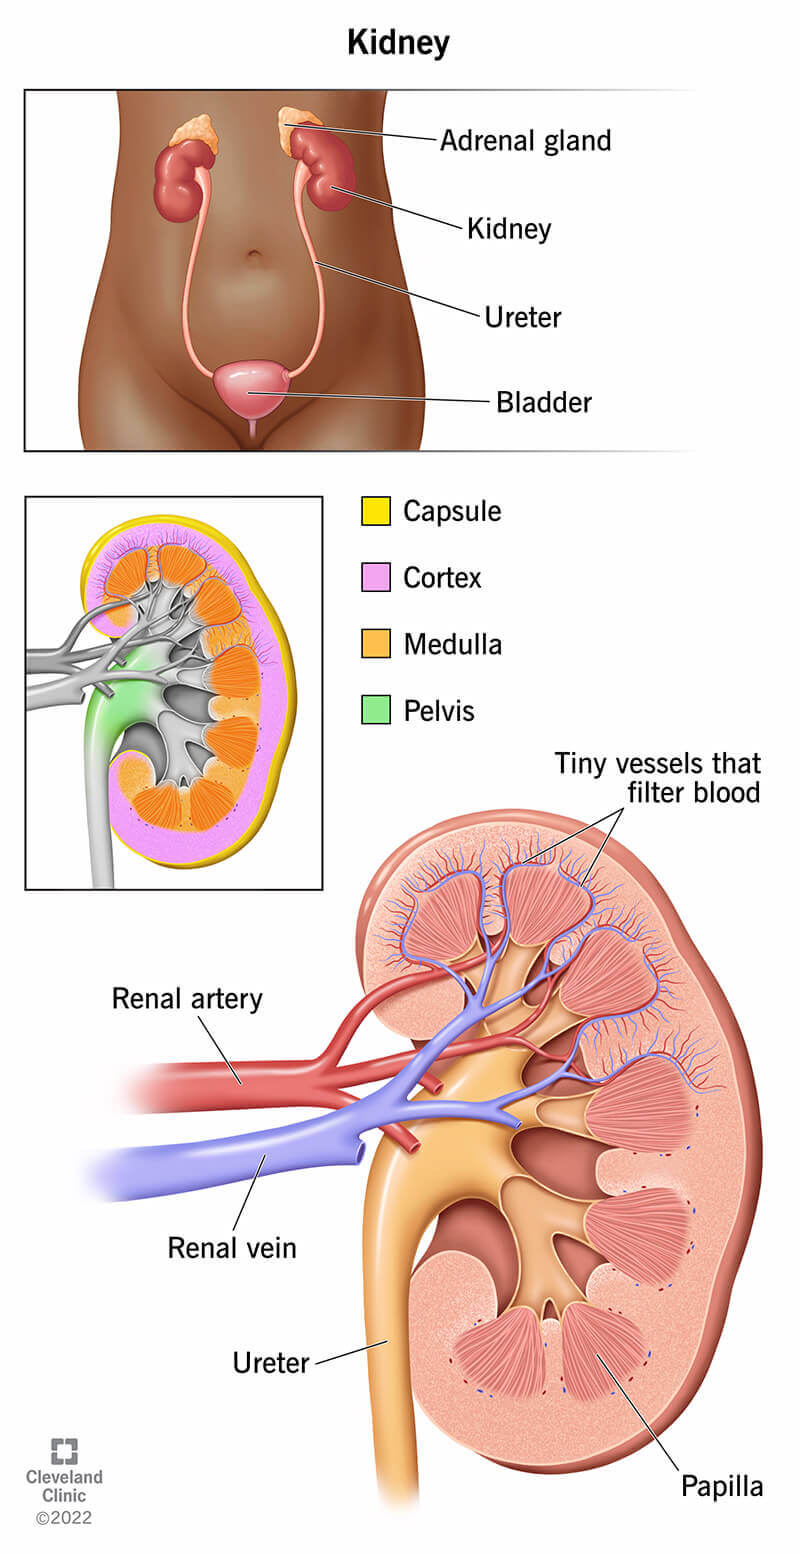 Anatomia dei reni, inclusa la loro posizione nel corpo e i dettagli delle parti che compongono i reni.